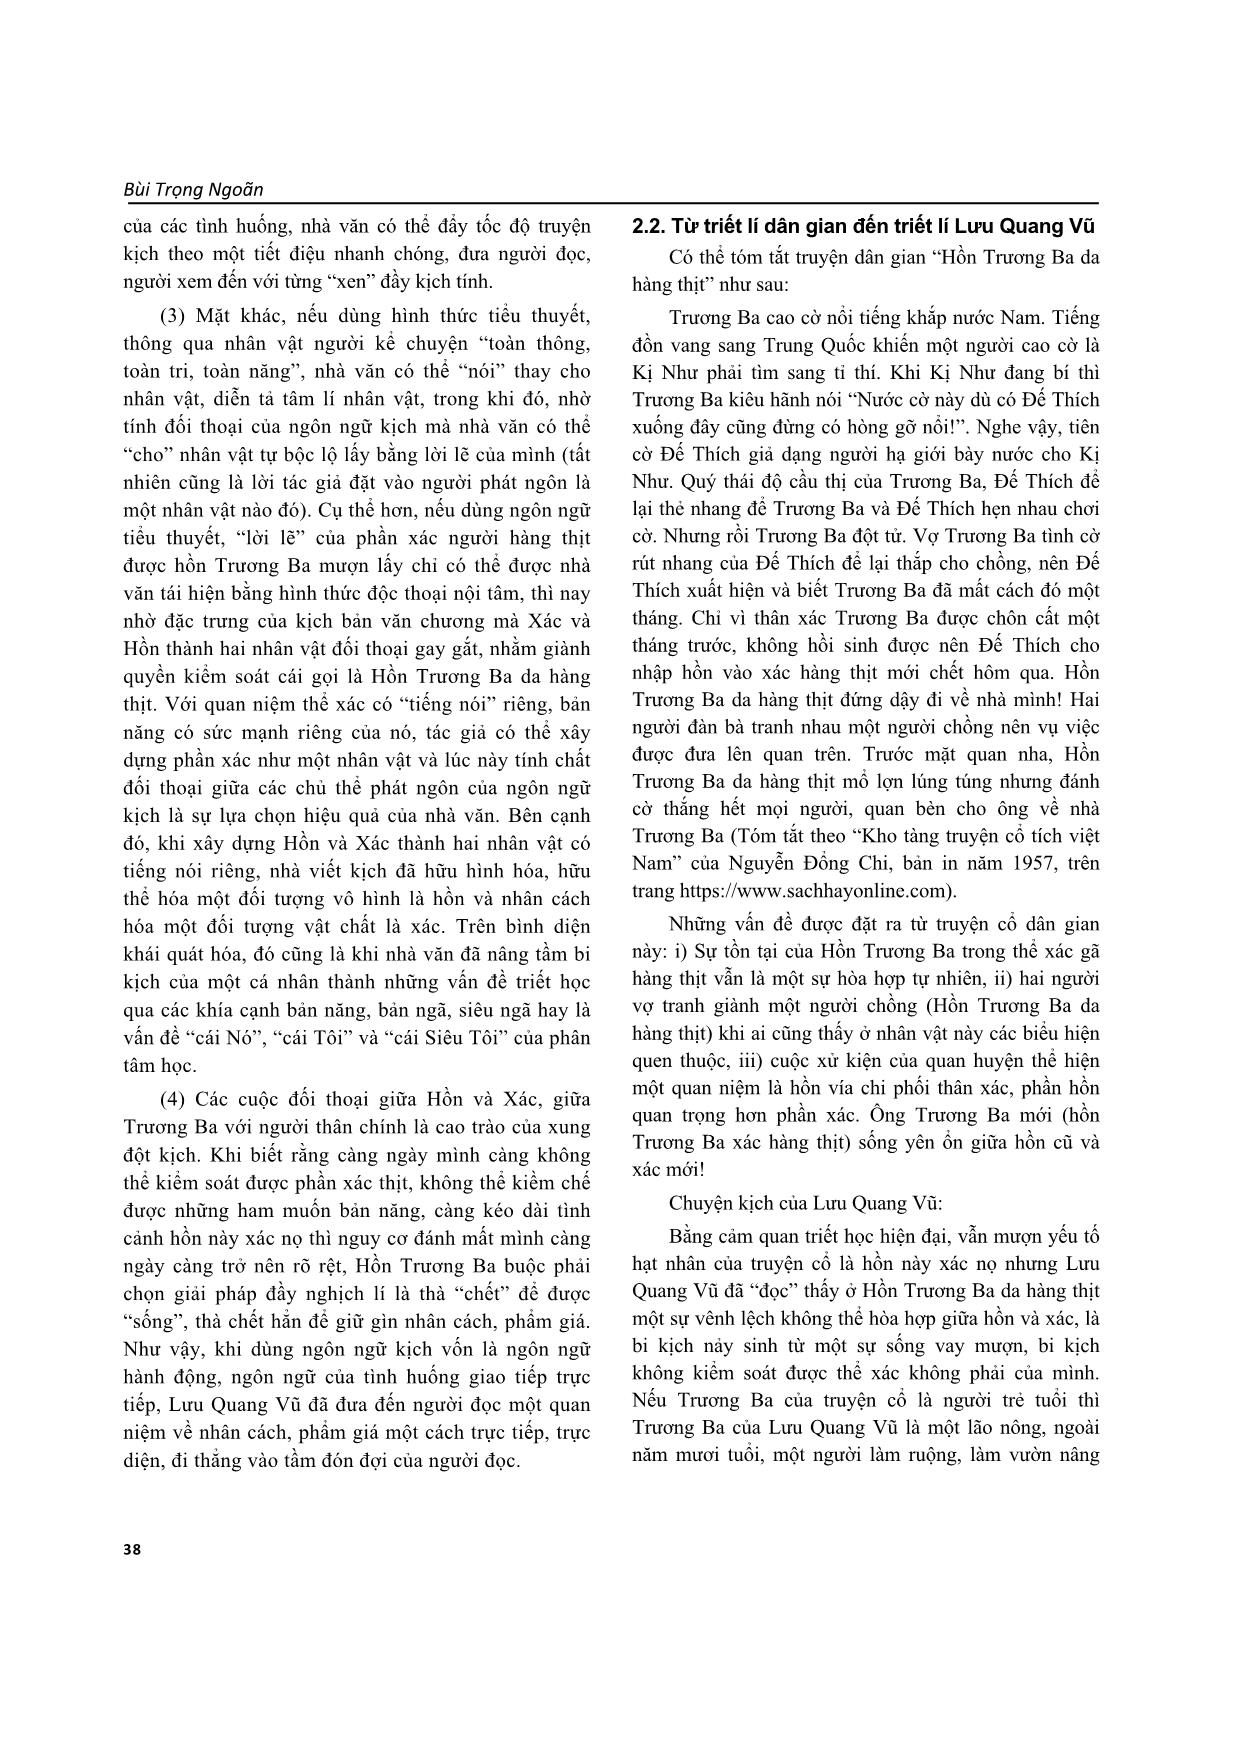 Ý tưởng triết luận và sáng tạo nghệ thuật của Lưu Quang Vũ trong kịch bản “Hồn Trương Ba da hàng thịt” trang 3